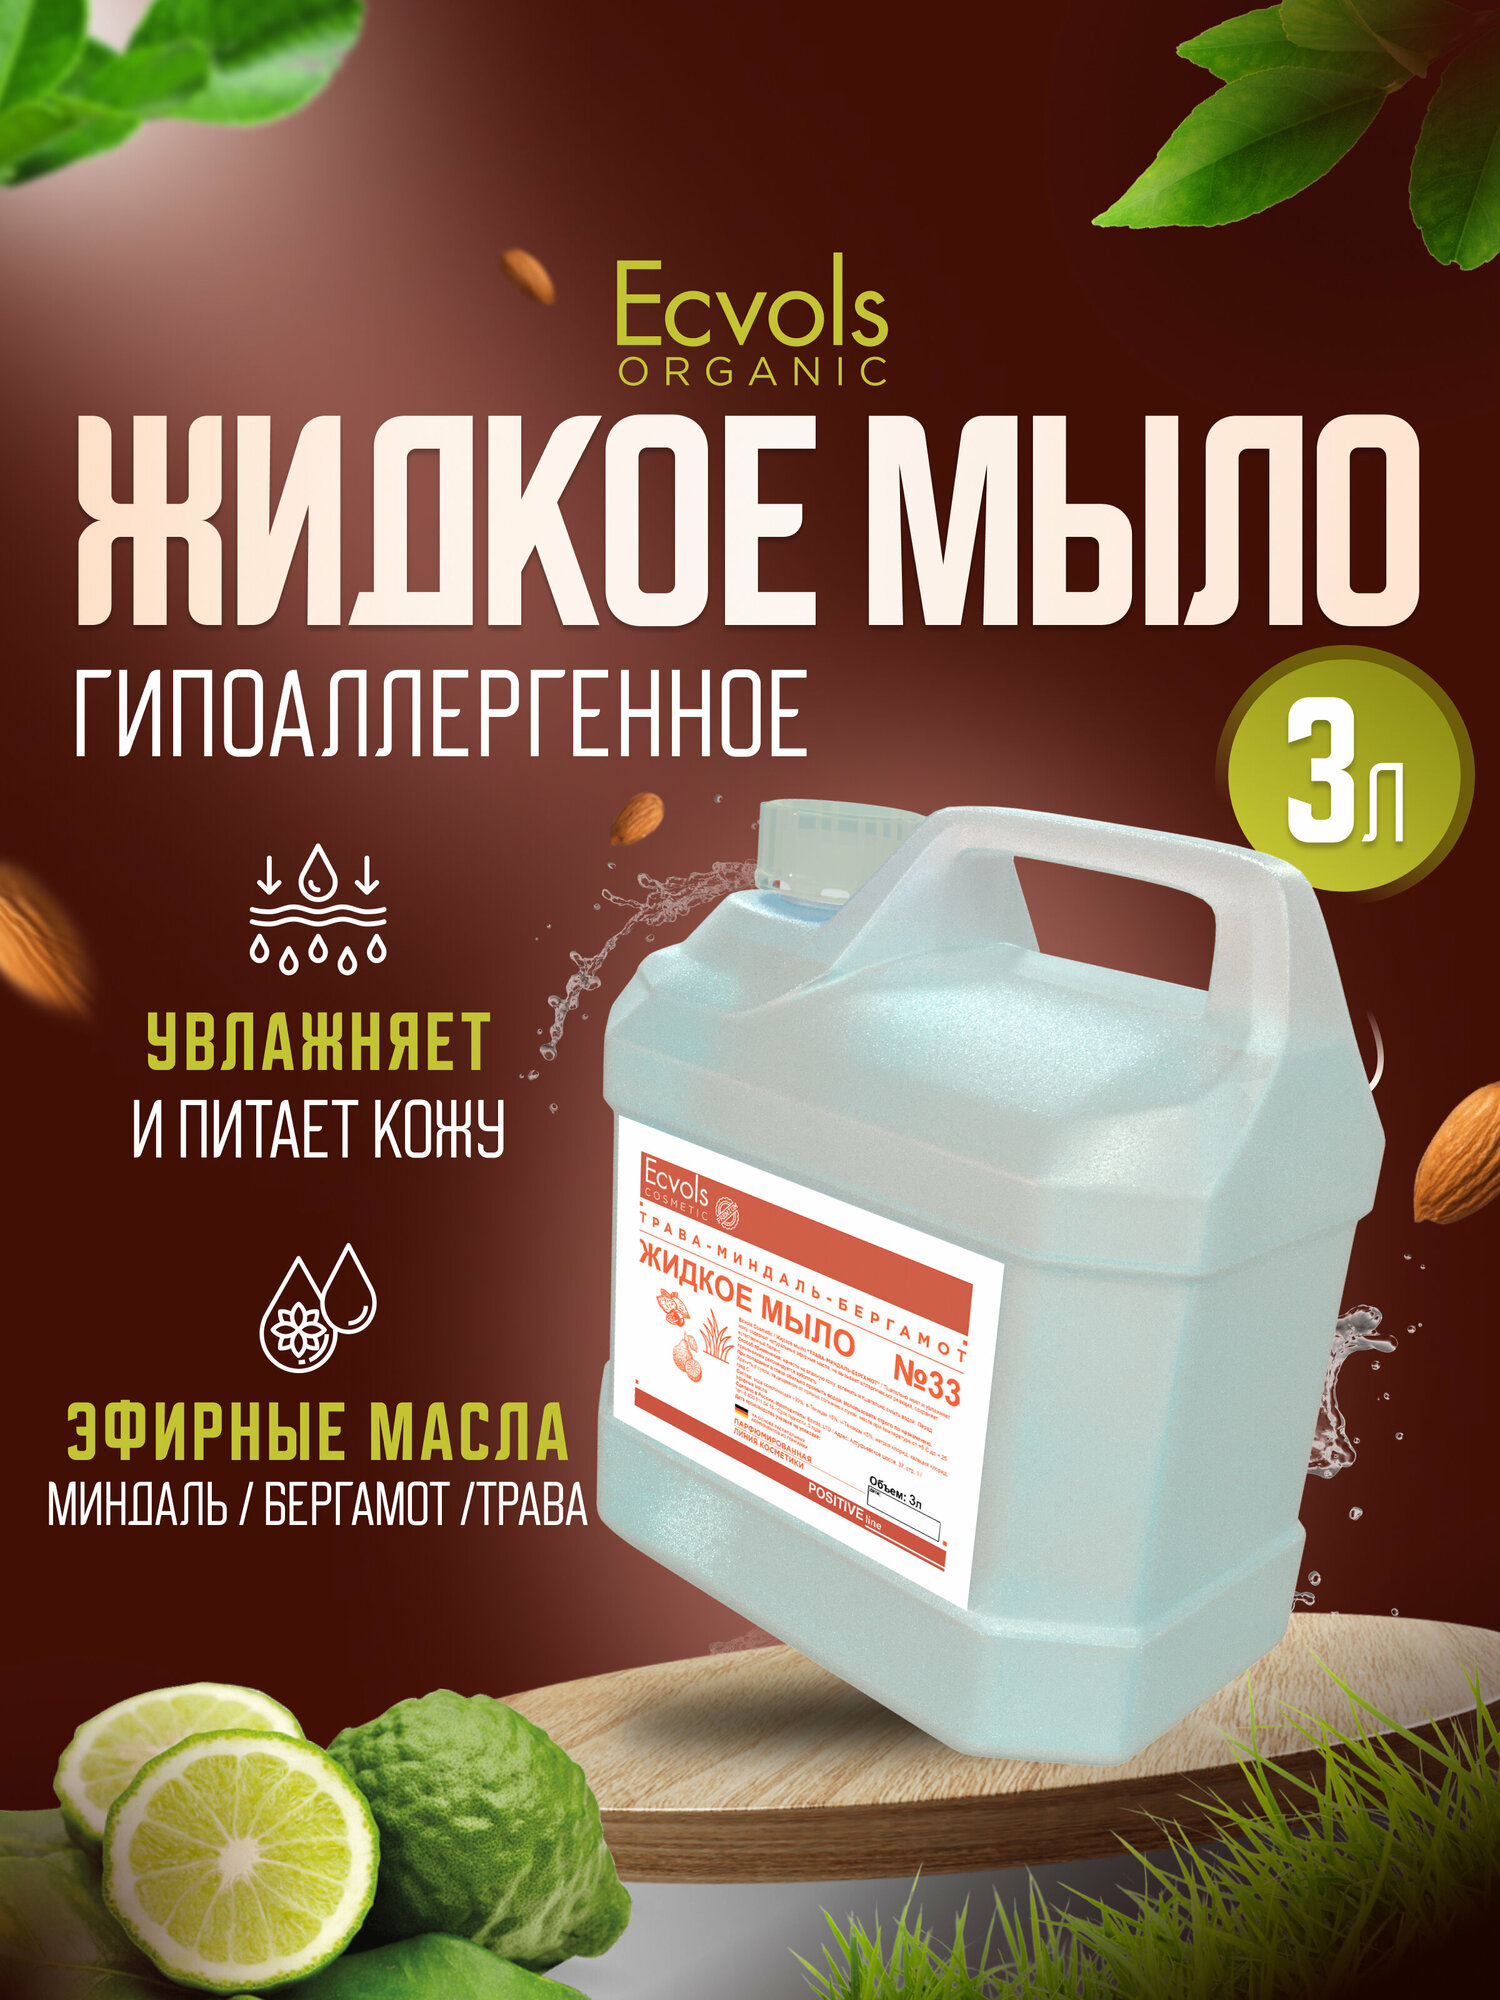 Жидкое мыло для рук и тела Ecvols Organic "Трава, миндаль, бергамот" увлажняющее, натуральное, 3 л